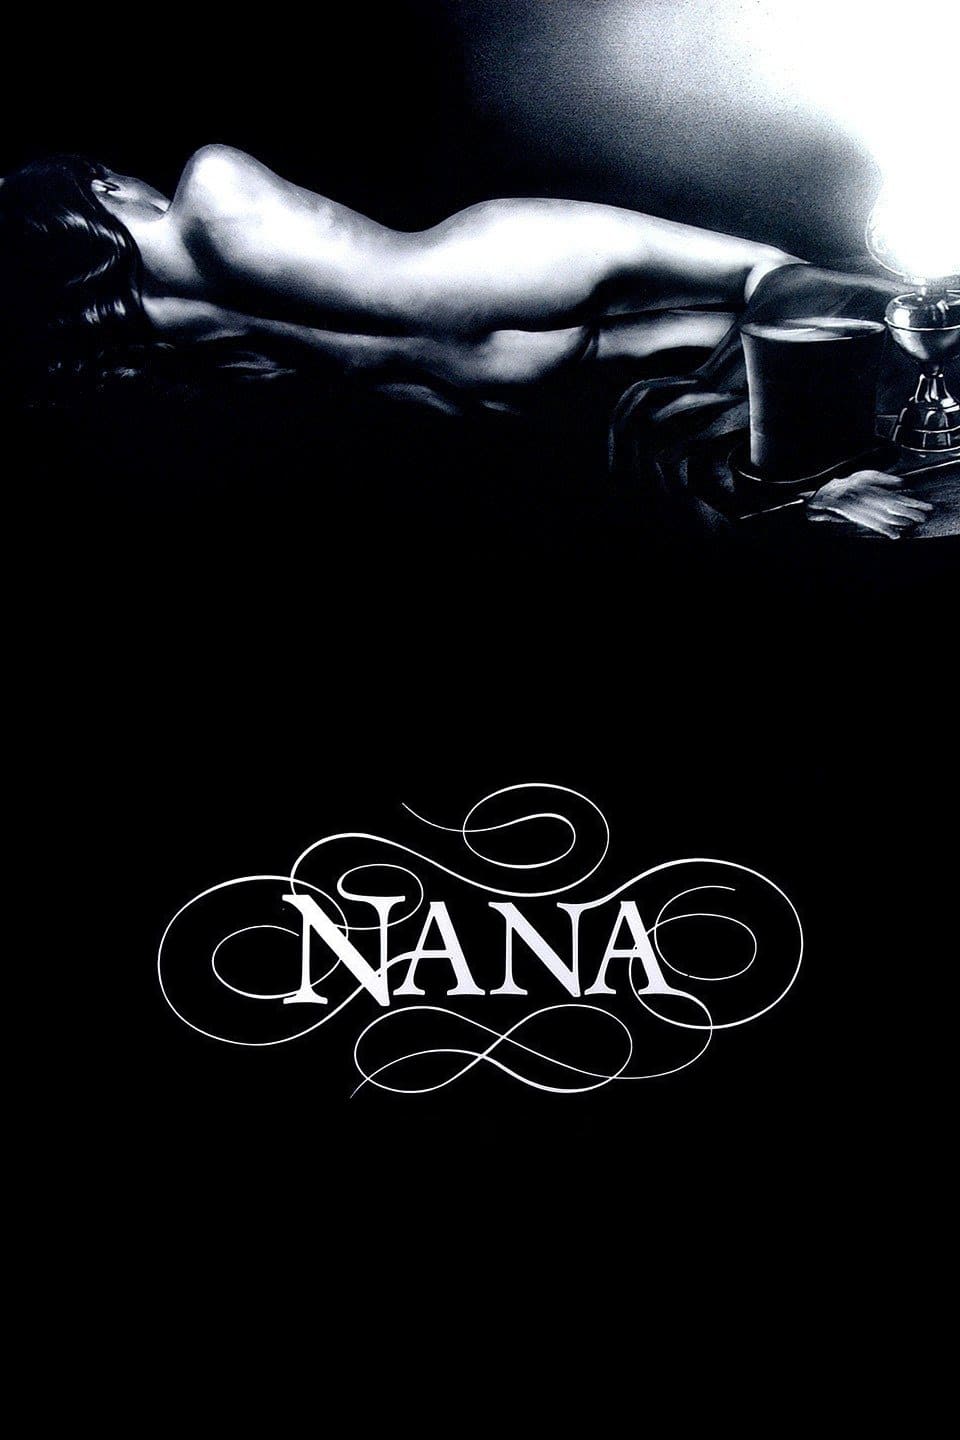 Nana (1983)